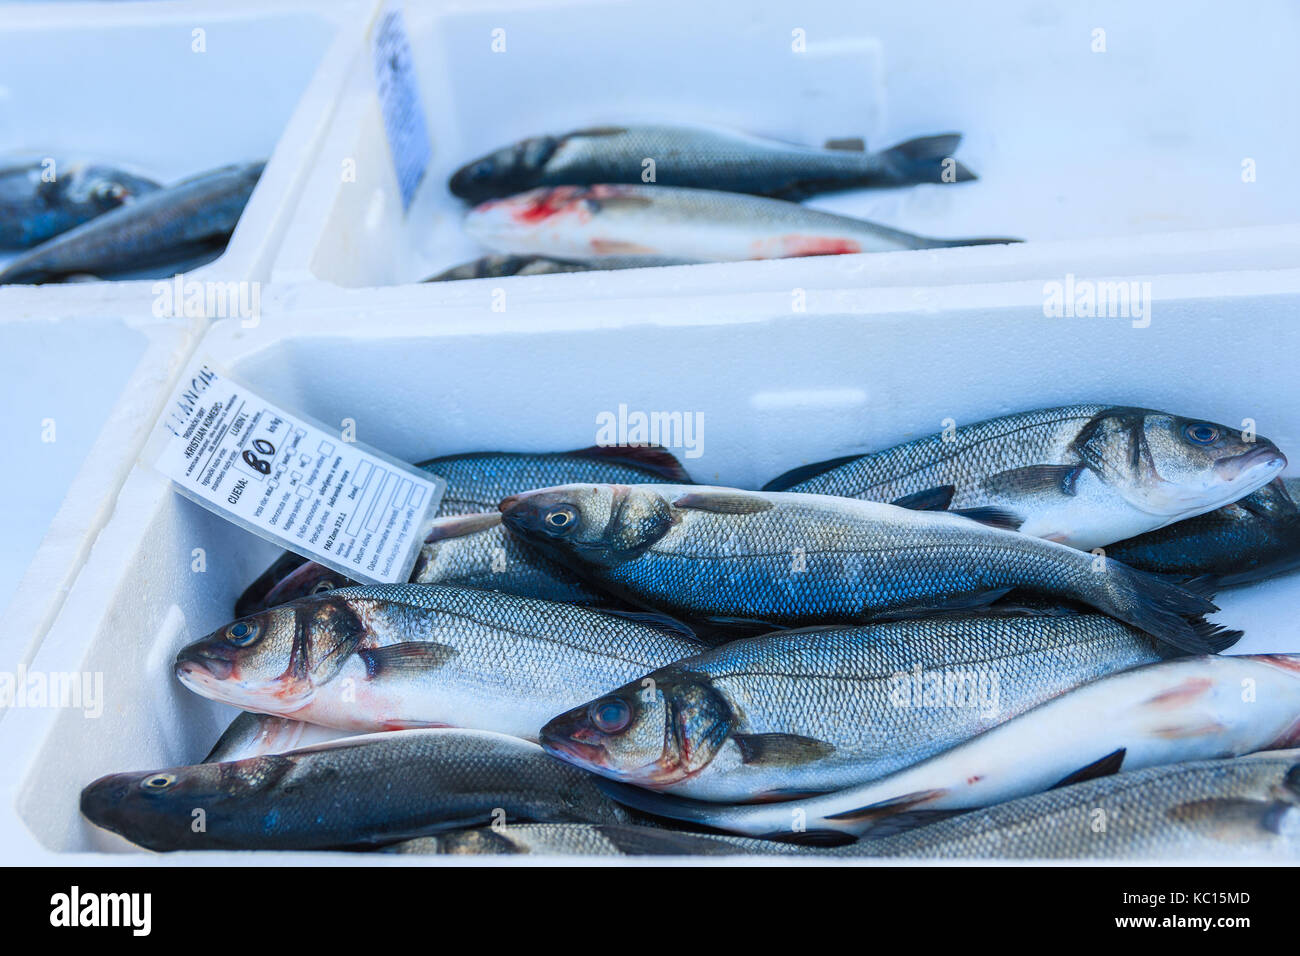 PRIMOSTEN, KROATIEN - Sep 5, 2017: Frischer Fisch in Kisten zum Verkauf in Primosten, Dalmatien, Kroatien. Stockfoto